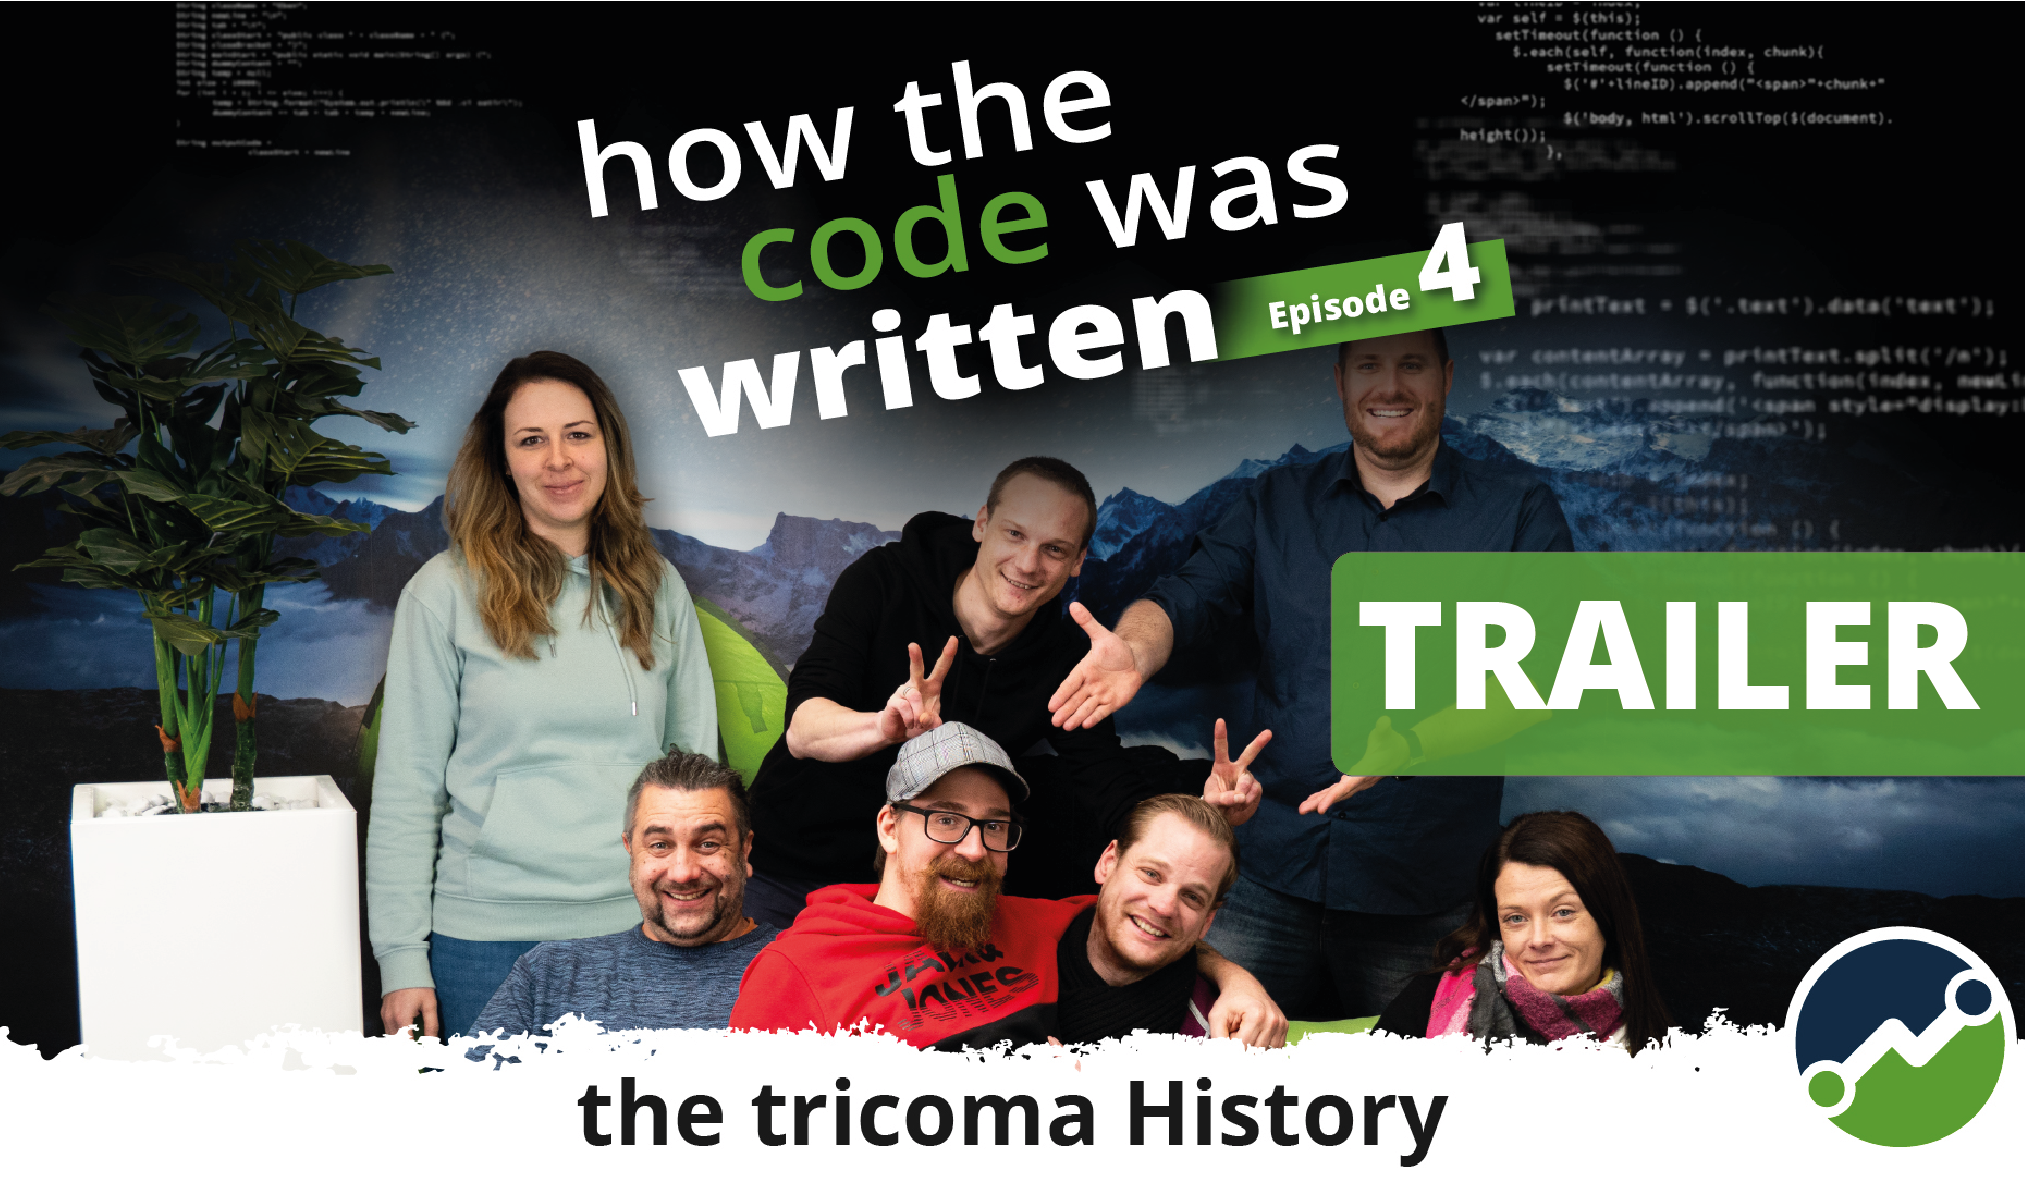 Der Trailer für Folge 4 von „How the code was written“ zeigt tricoma vor dem Wendepunkt: Aufstieg oder Abstieg?